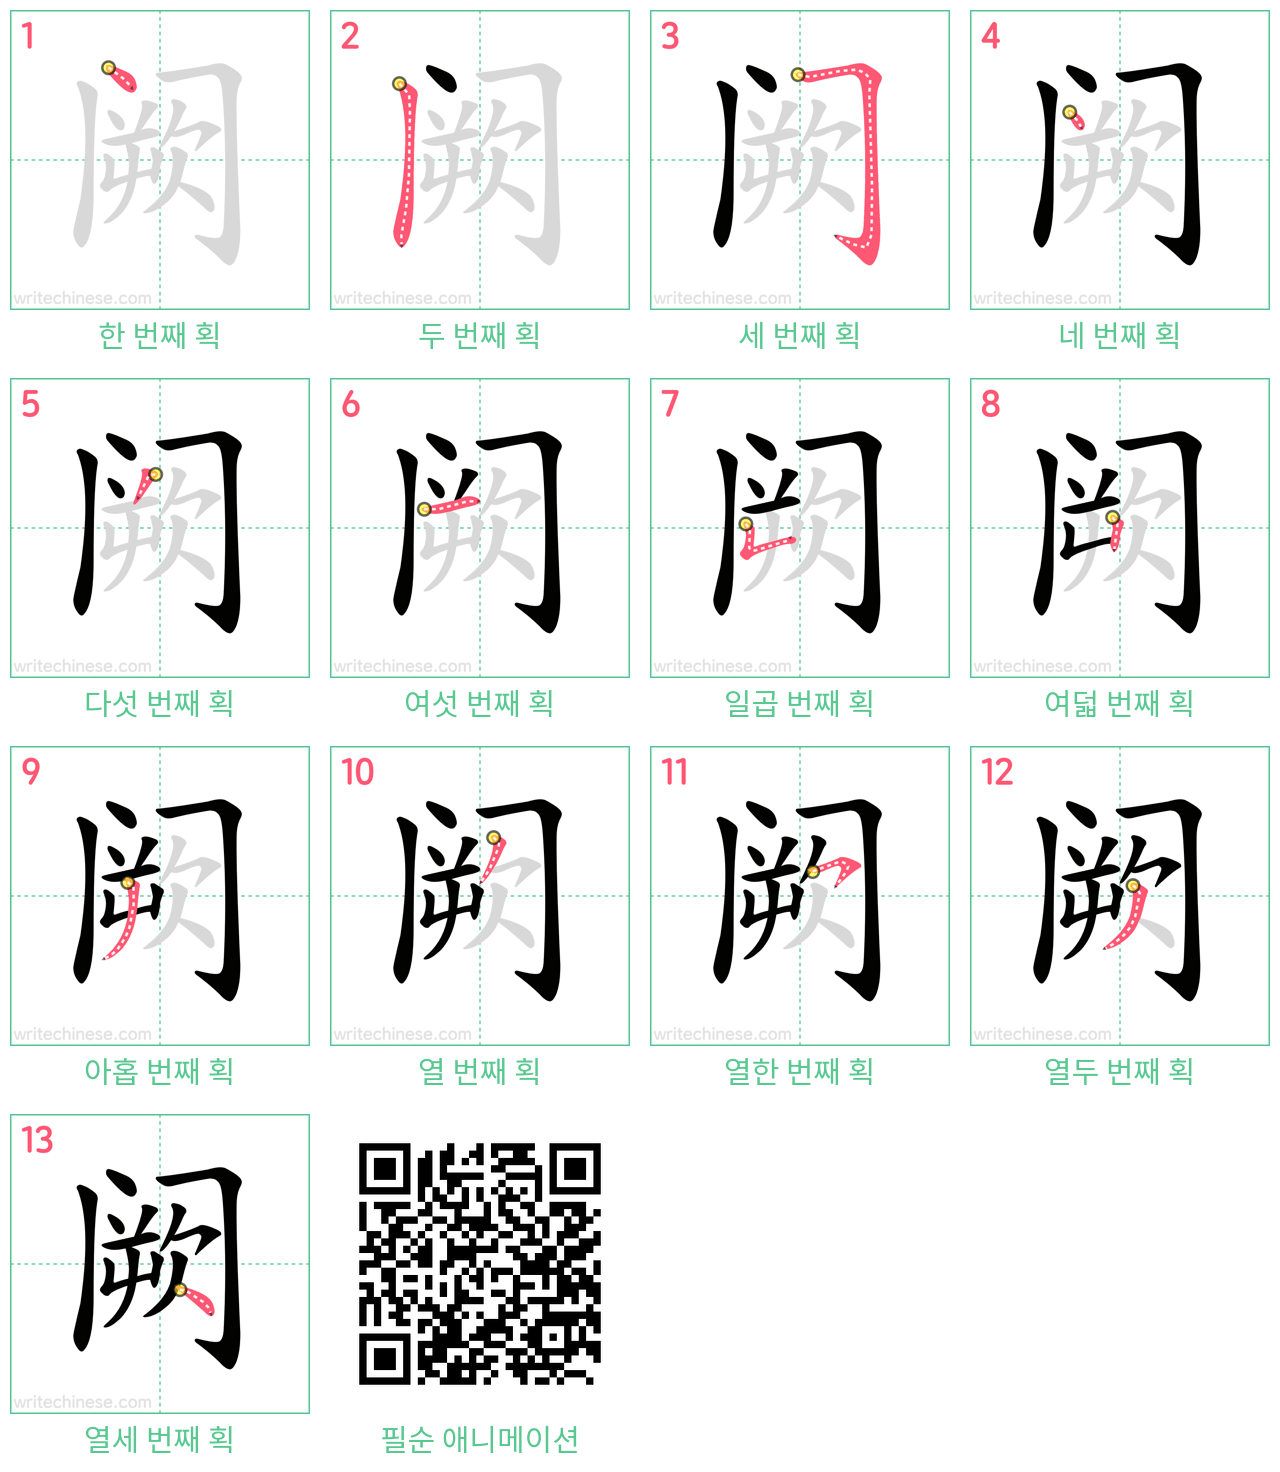 阙 step-by-step stroke order diagrams